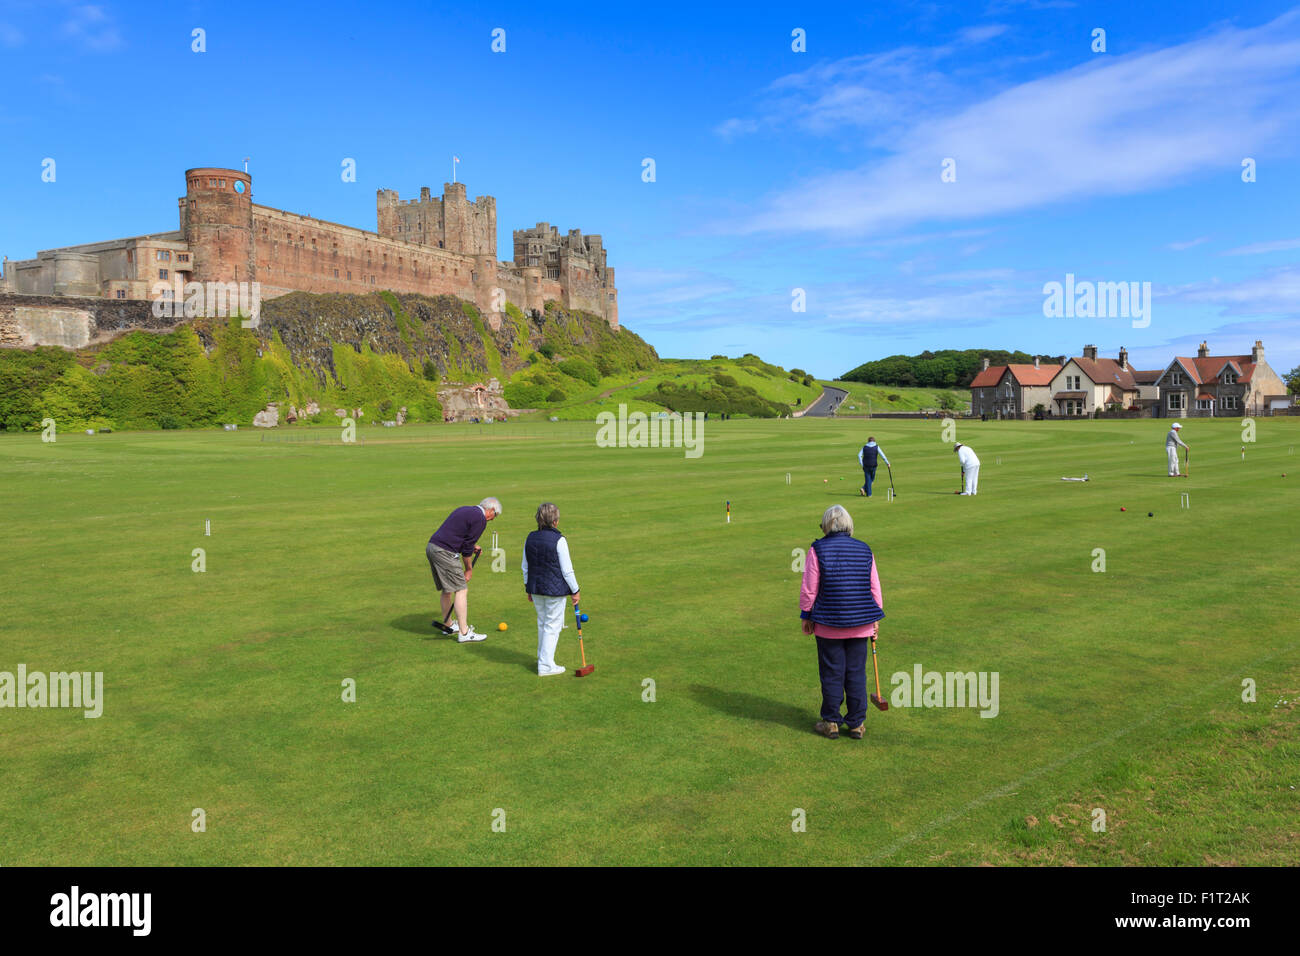 Playing croquet sous Château de Bamburgh sur un bel après-midi d'été, Bamburgh, Northumberland, Angleterre, Royaume-Uni, Europe Banque D'Images